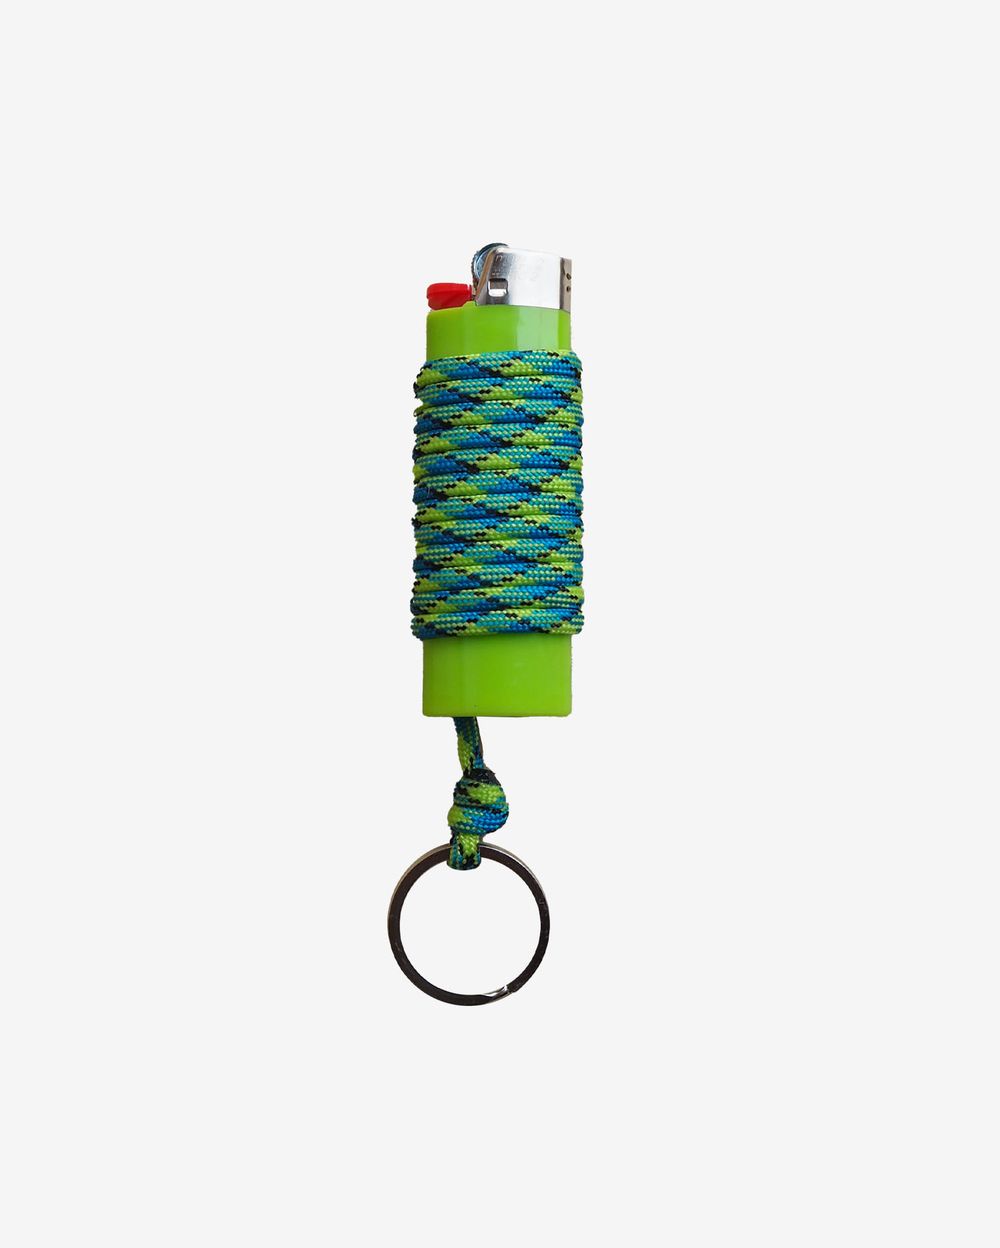 Зажигалка Ack Items зелёная (сине-зелёно-чёрный шнурок)